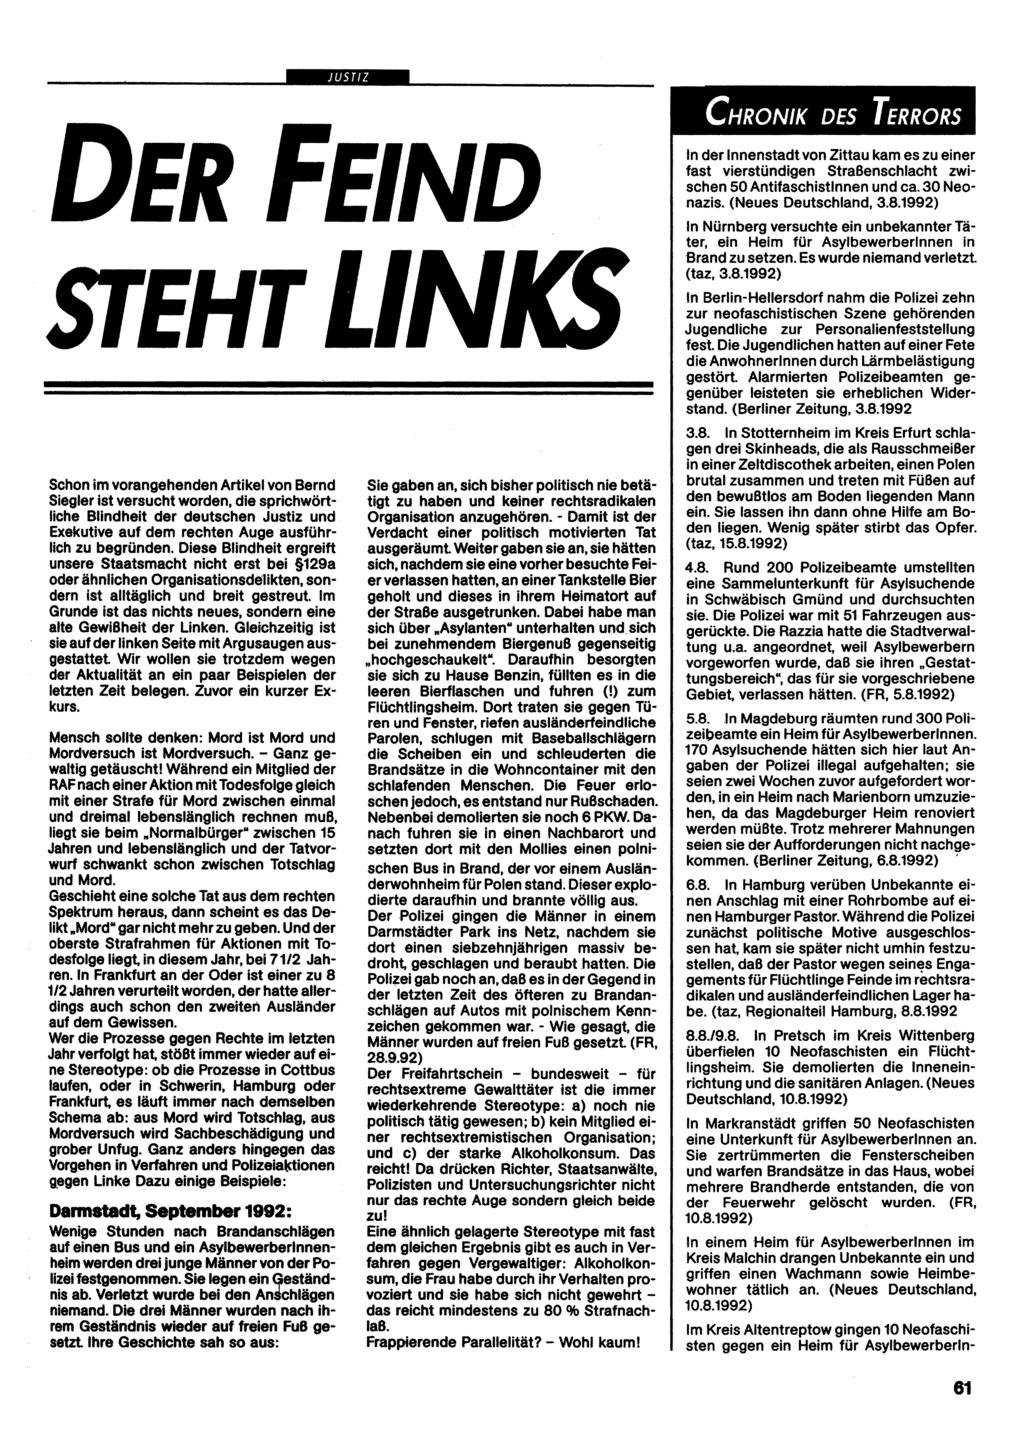 JUSTIZ DER FEIND STEHTLIN Schon im vorangehenden Artikel von Bernd Siegier Ist versucht worden, die sprichwörtliche Blindheit der deutschen Justiz und Exekutive auf dem rechten Auge ausführlich zu